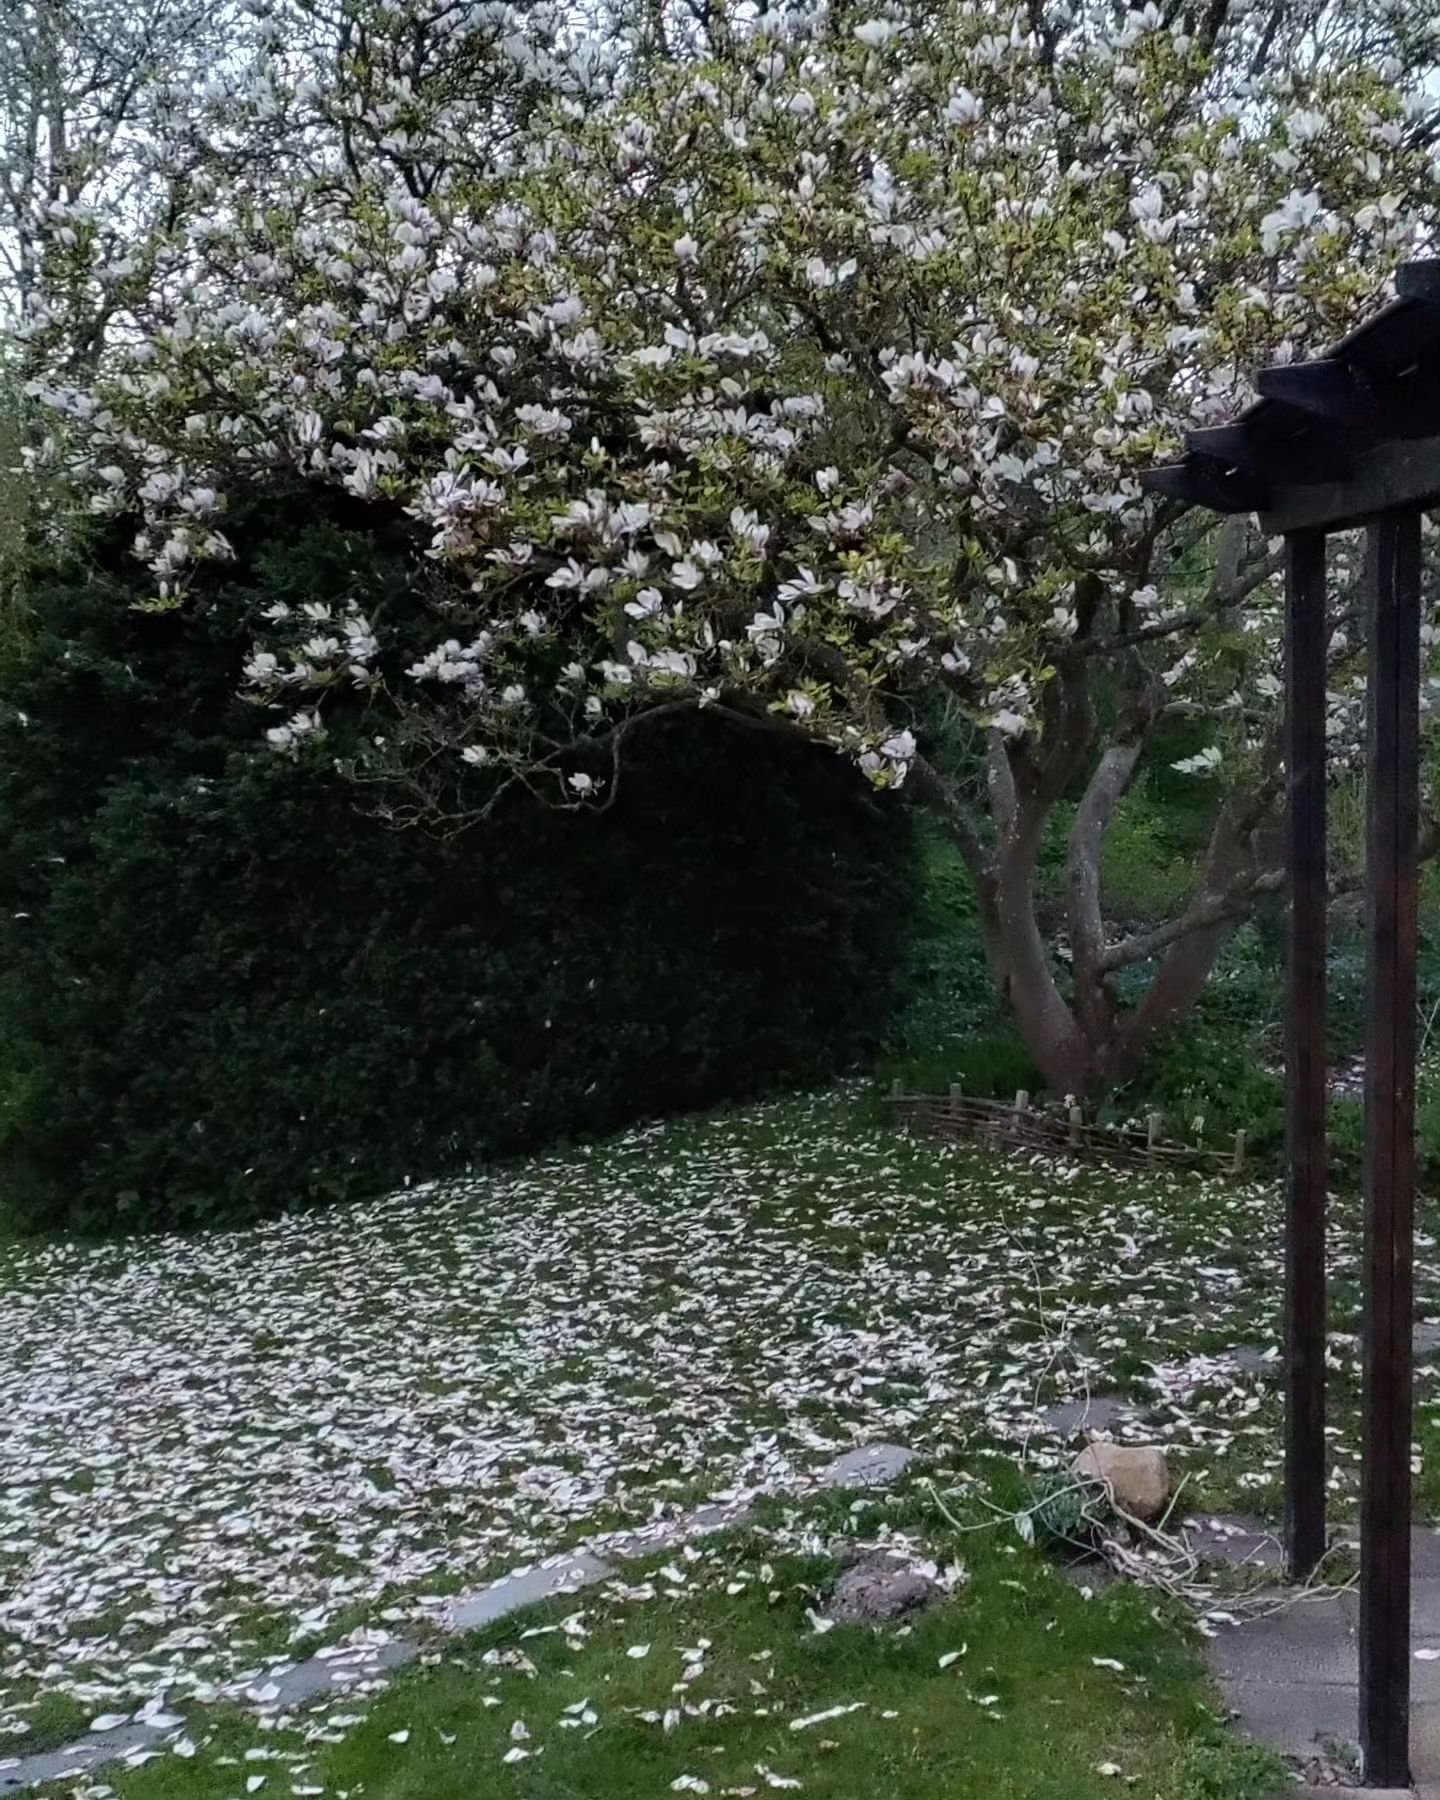 Magnolian blommade s&aring; fint n&aring;gra dagar... Sen kom bl&aring;sten... Och iofs &auml;r det ju s&aring; vackert med blomblad p&aring; gr&auml;smattan